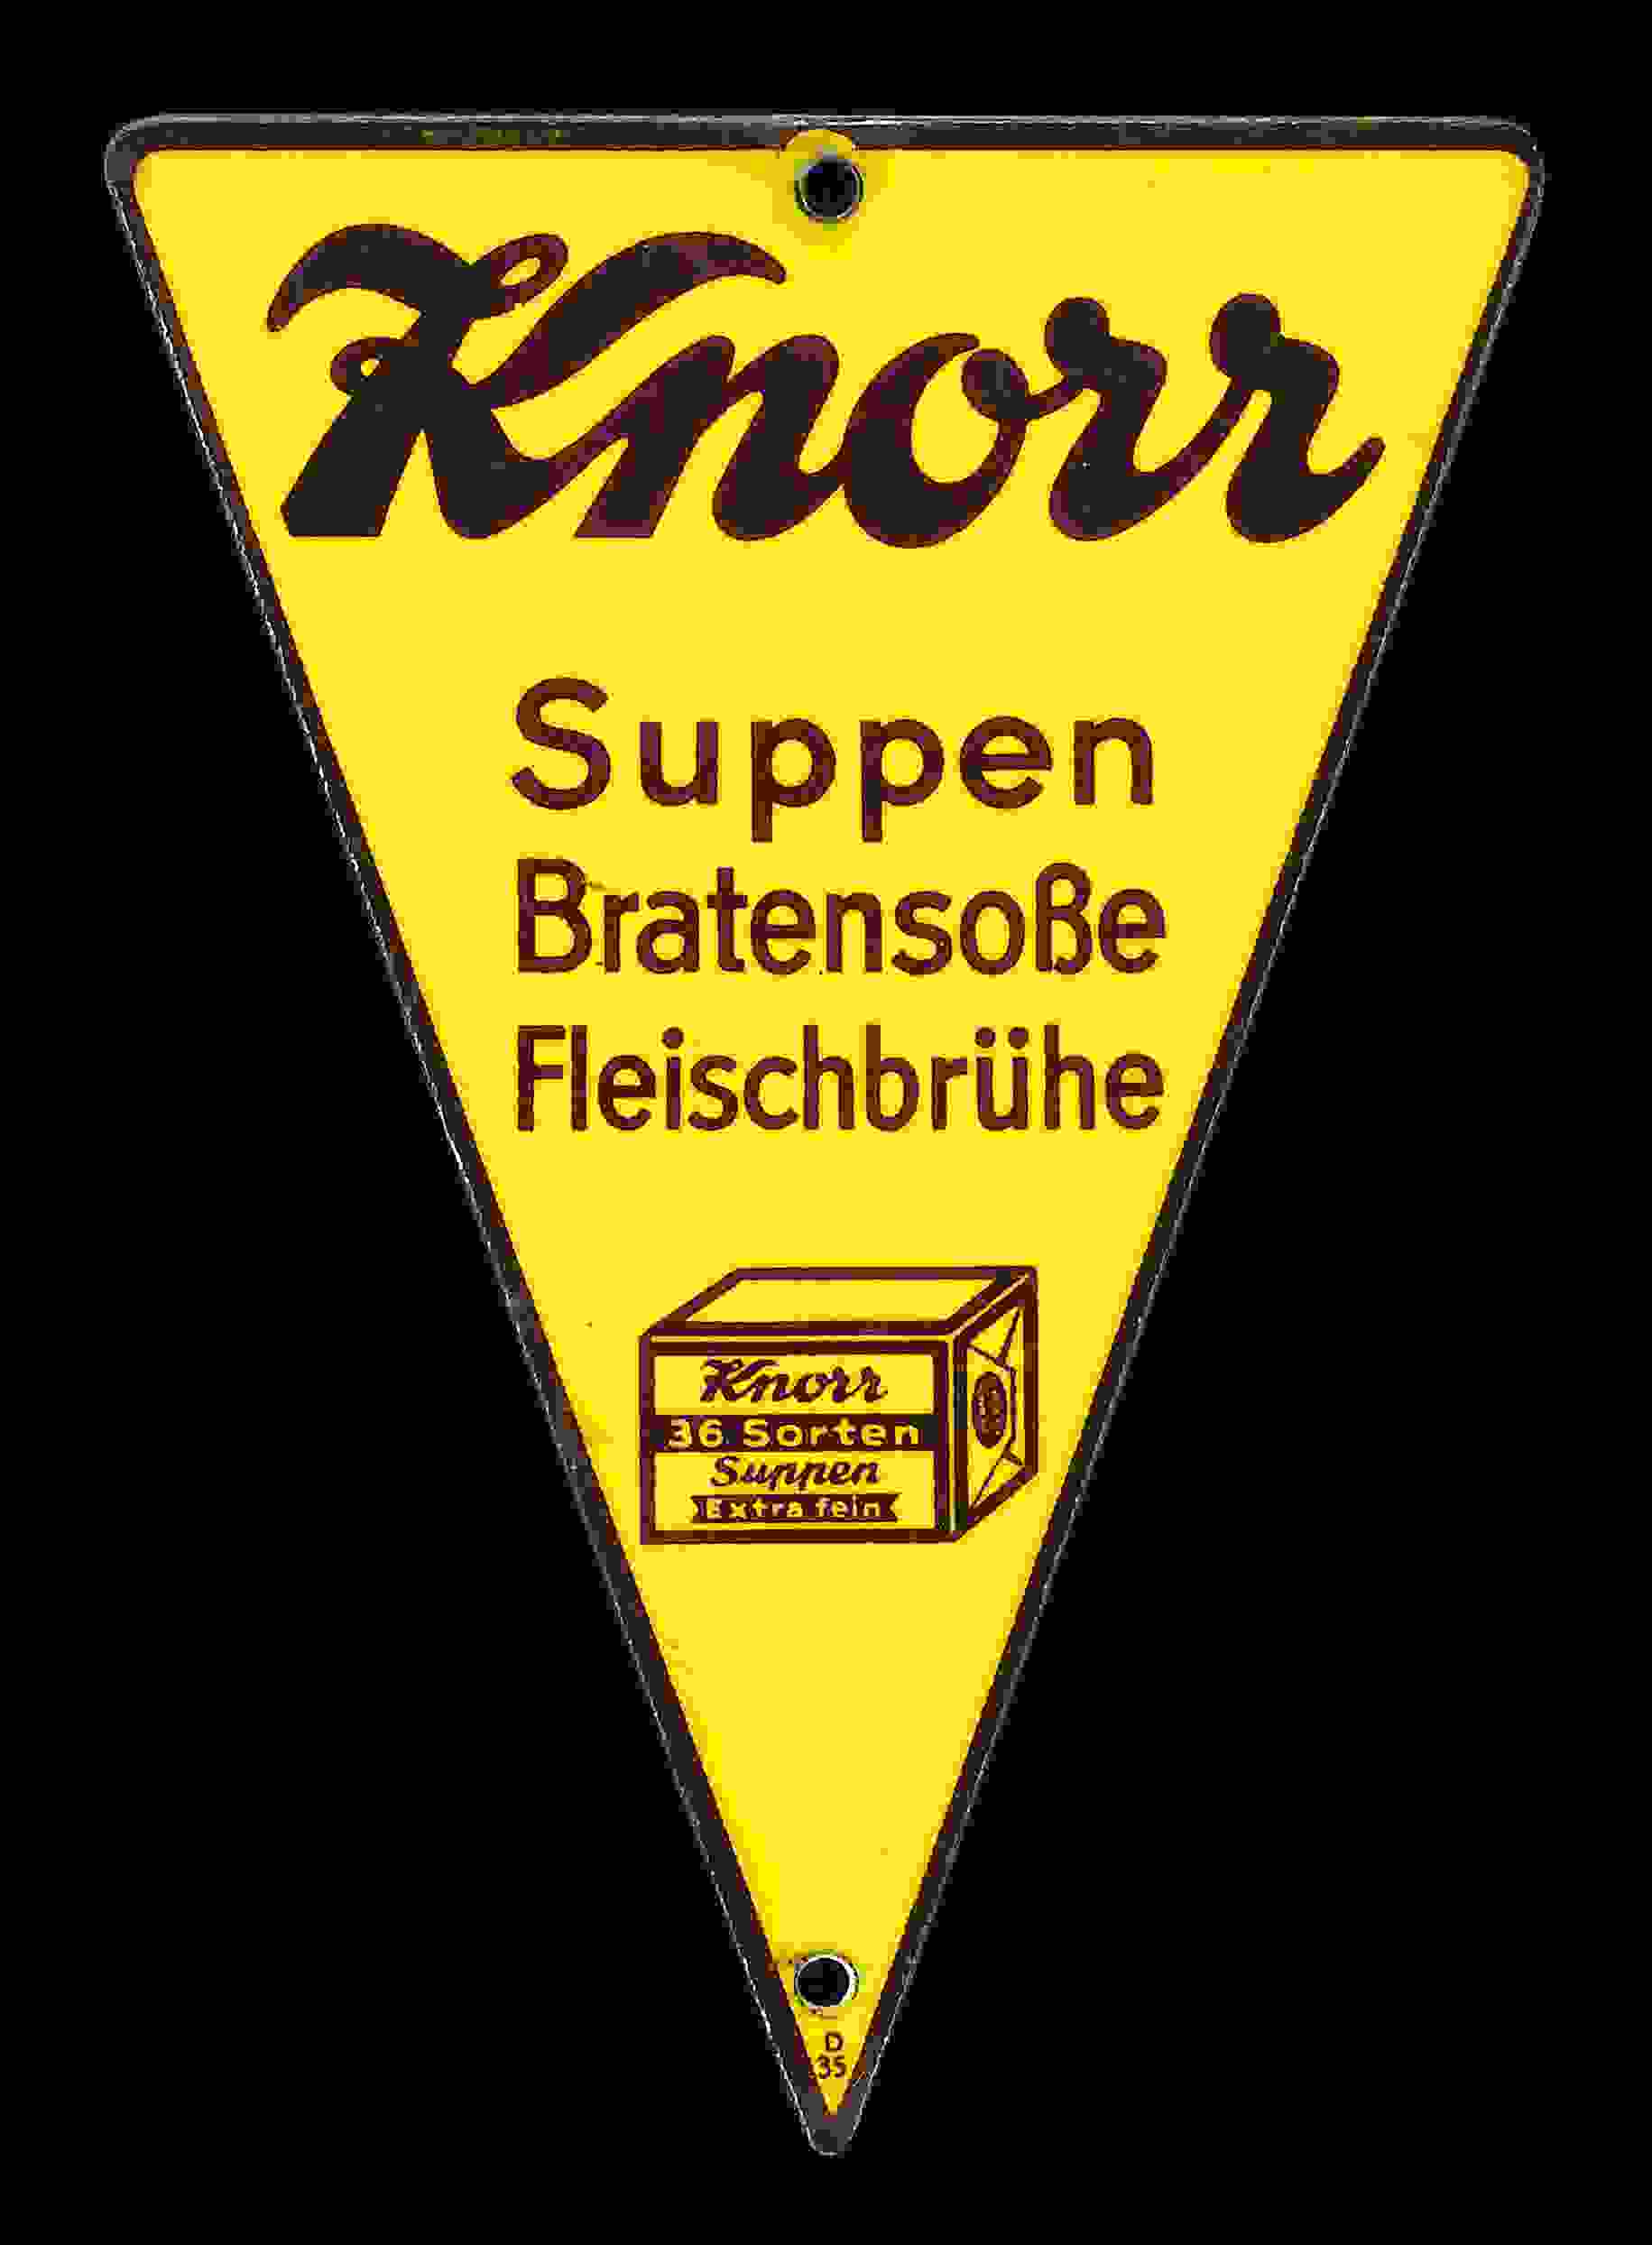 Knorr Suppen Bratensoße Fleischbrühe 